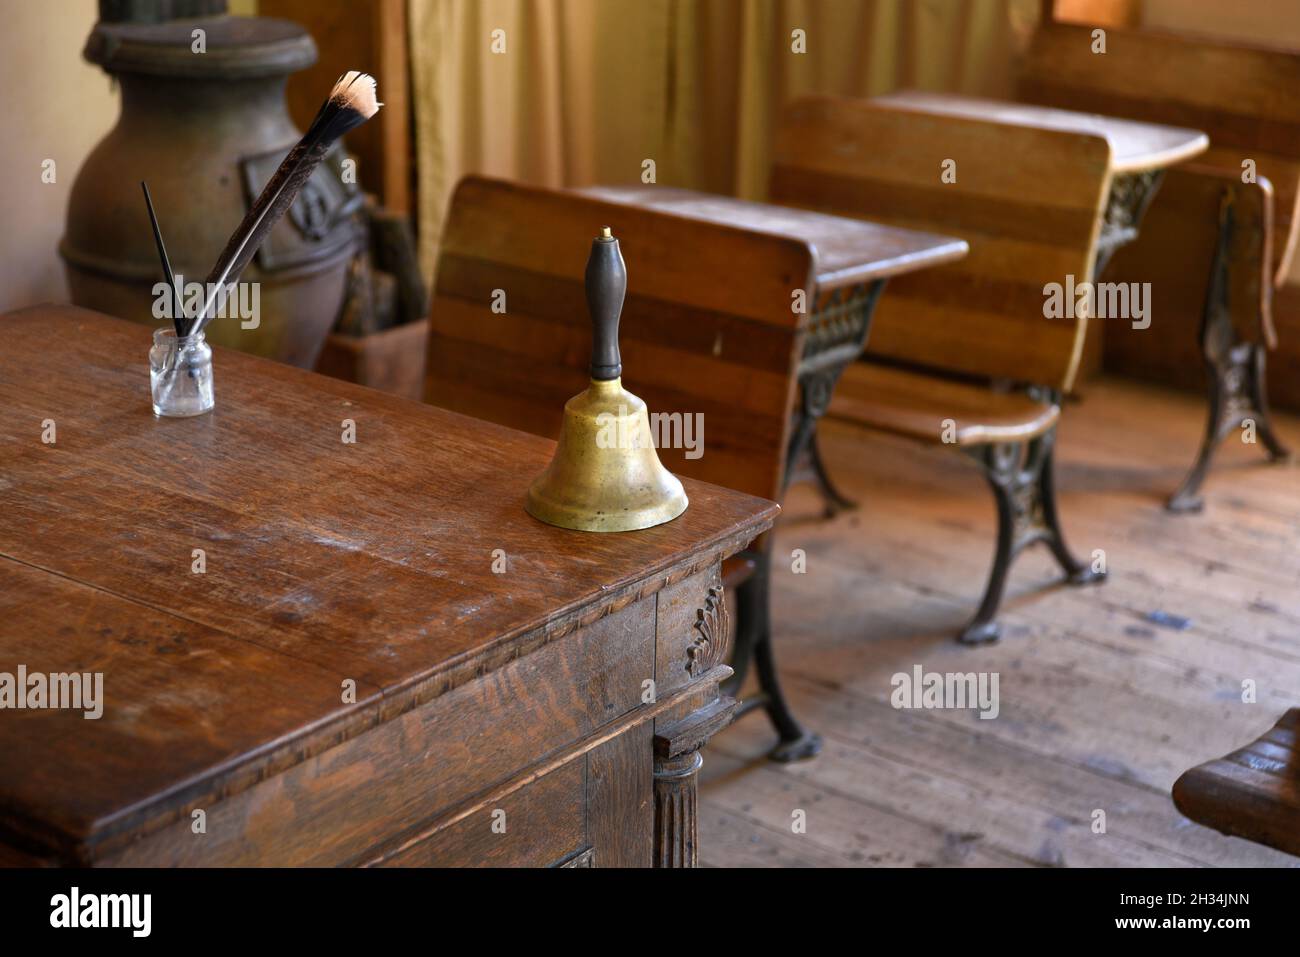 Une sonnette se trouve sur le bureau de l'enseignant dans une salle scolaire recréée du XIXe siècle au musée d'histoire vivante El Rancho de las Golondrinas, au Nouveau-Mexique, aux États-Unis. Banque D'Images